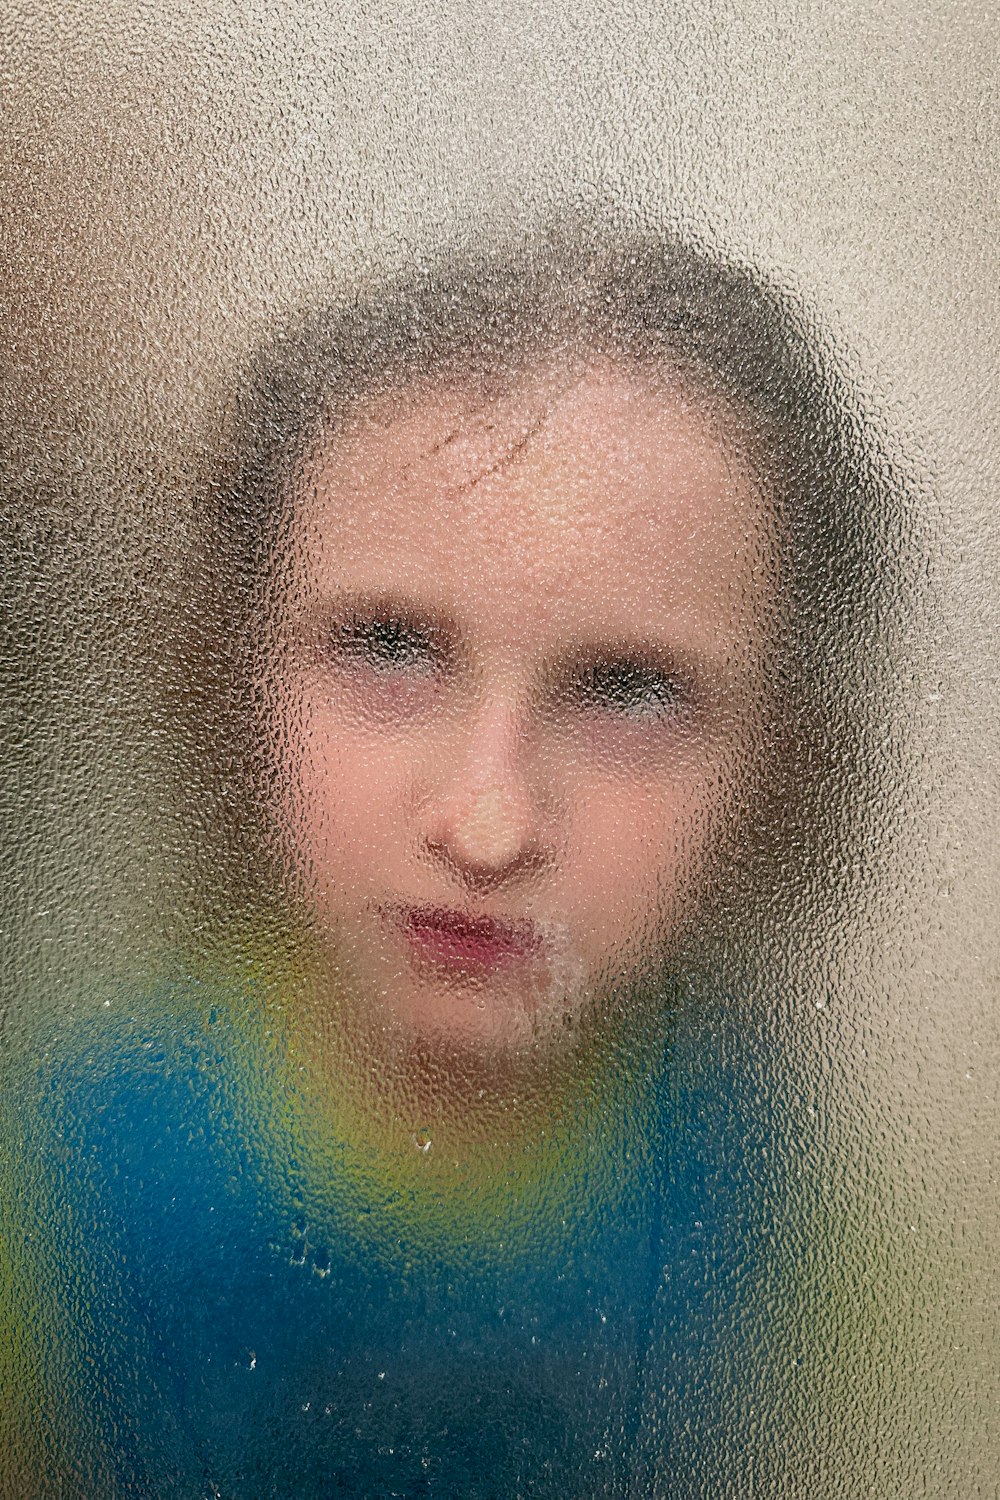 すりガラスの後ろの少女の顔のぼやけた画像